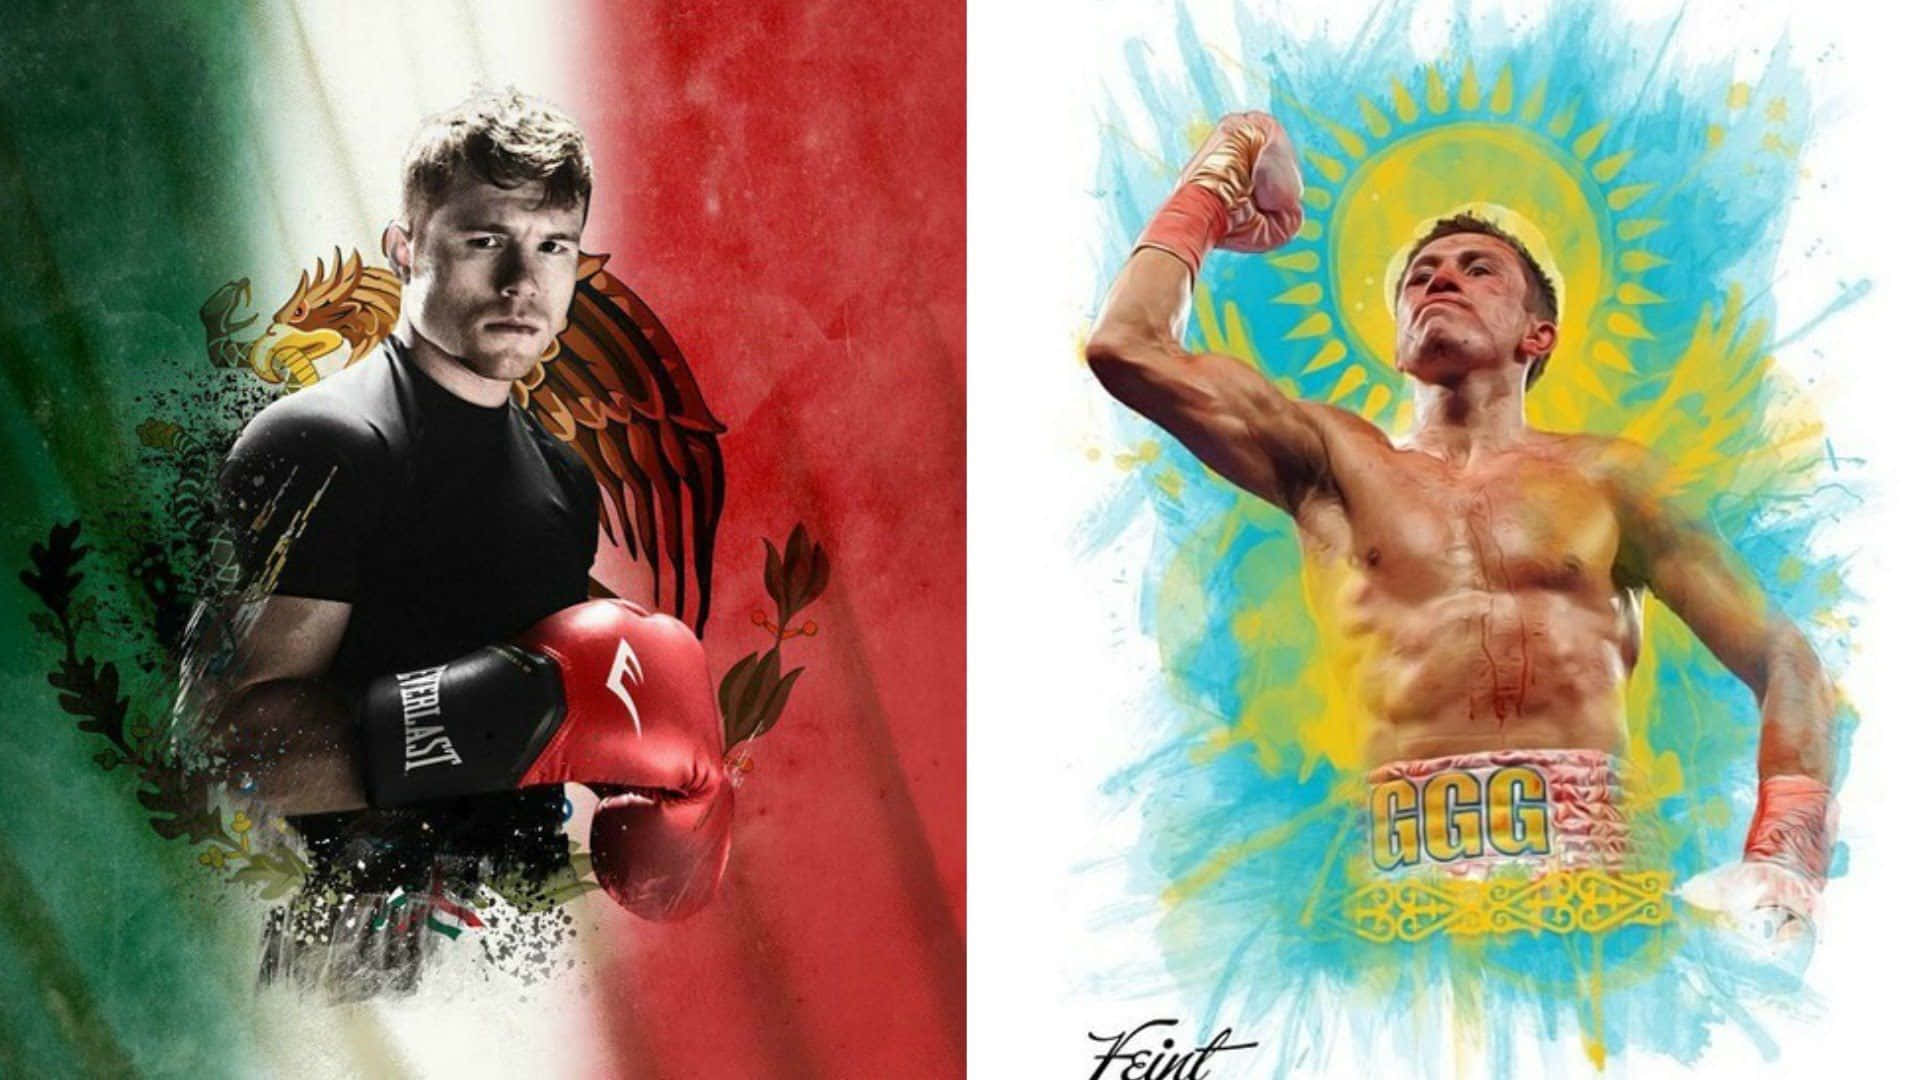 Canelo Alvarez, anerkendt verdensmester i boksning, går ind i ringen på denne fantastiske tapet. Wallpaper